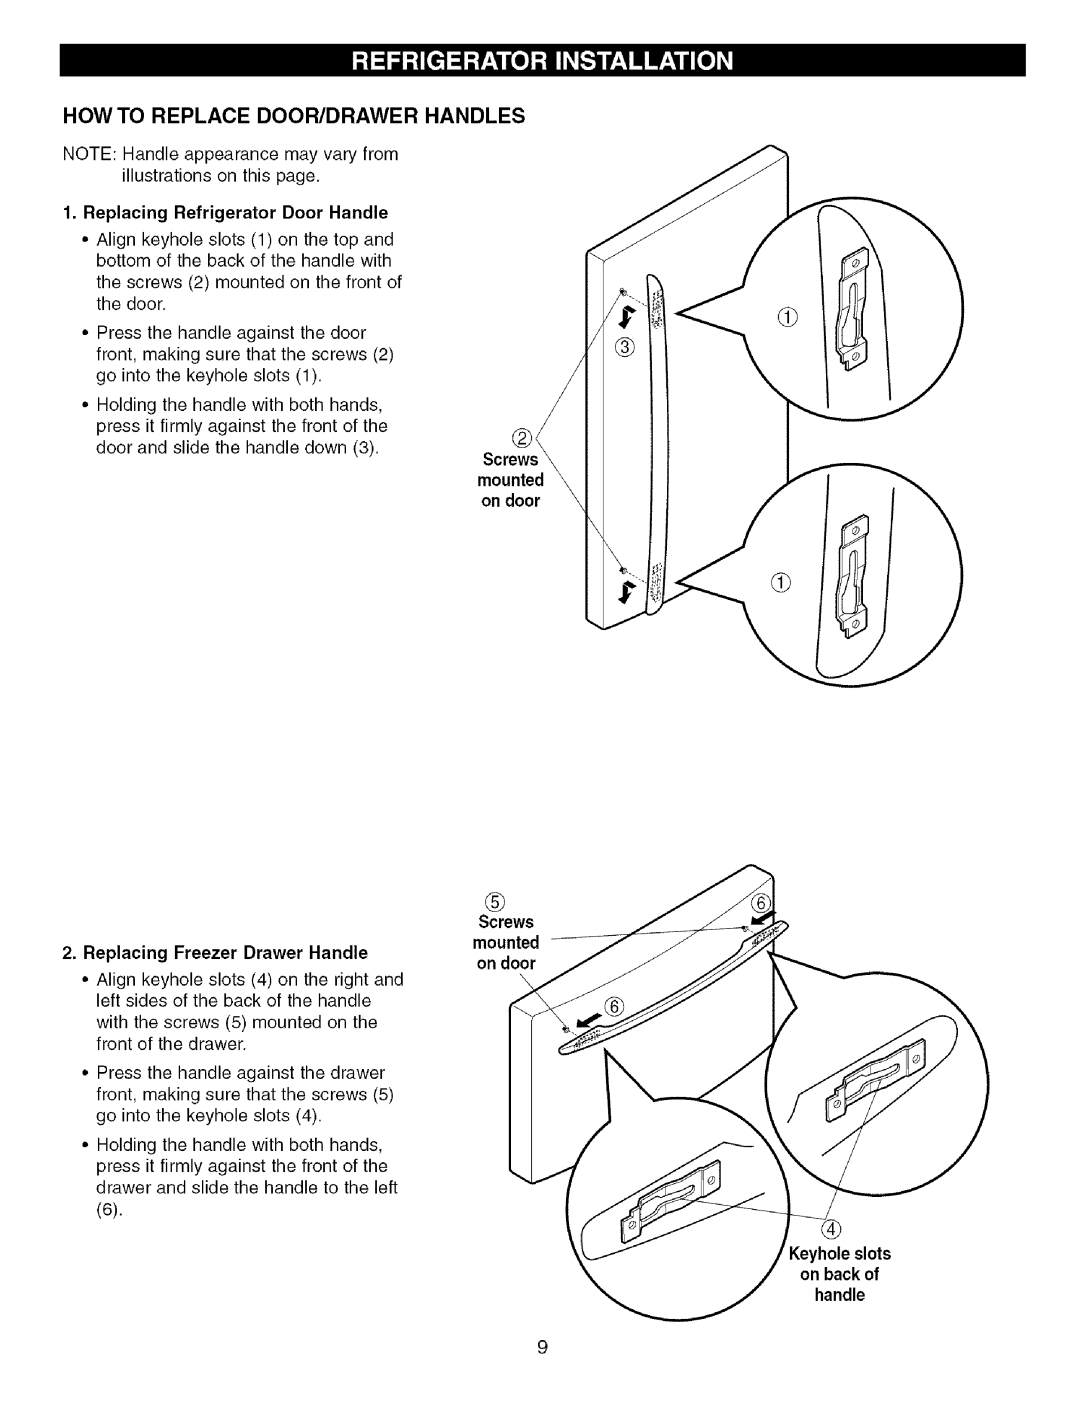 Kenmore 79575559400 manual How To Replace Door/Drawer Handles, Replacing Refrigerator Door Handle, Screws mounted on door 